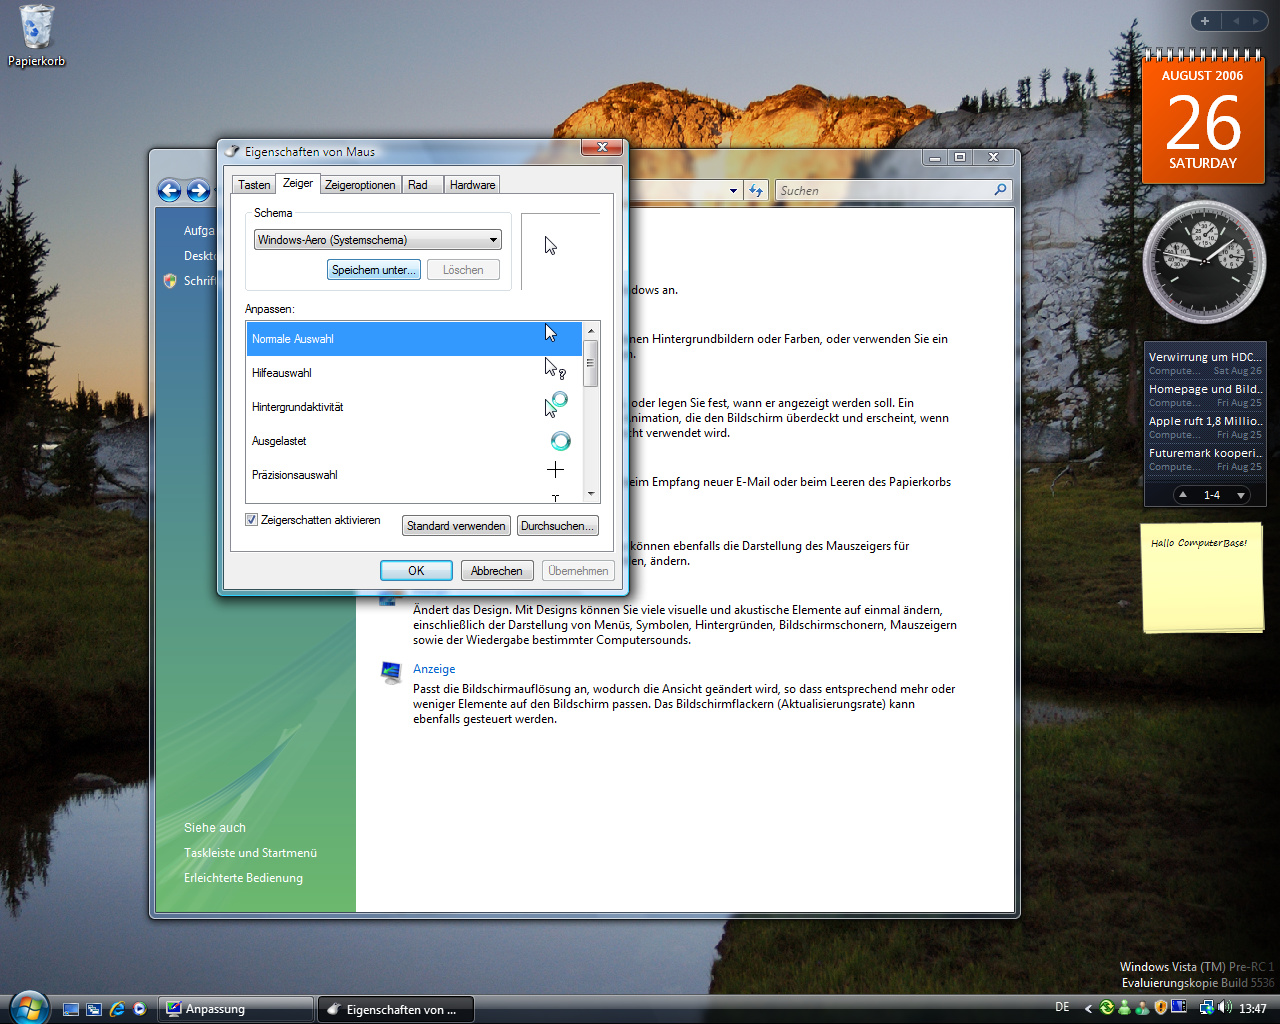 Windows Vista Build 5536 - Anpassung - Neue Mauszeiger